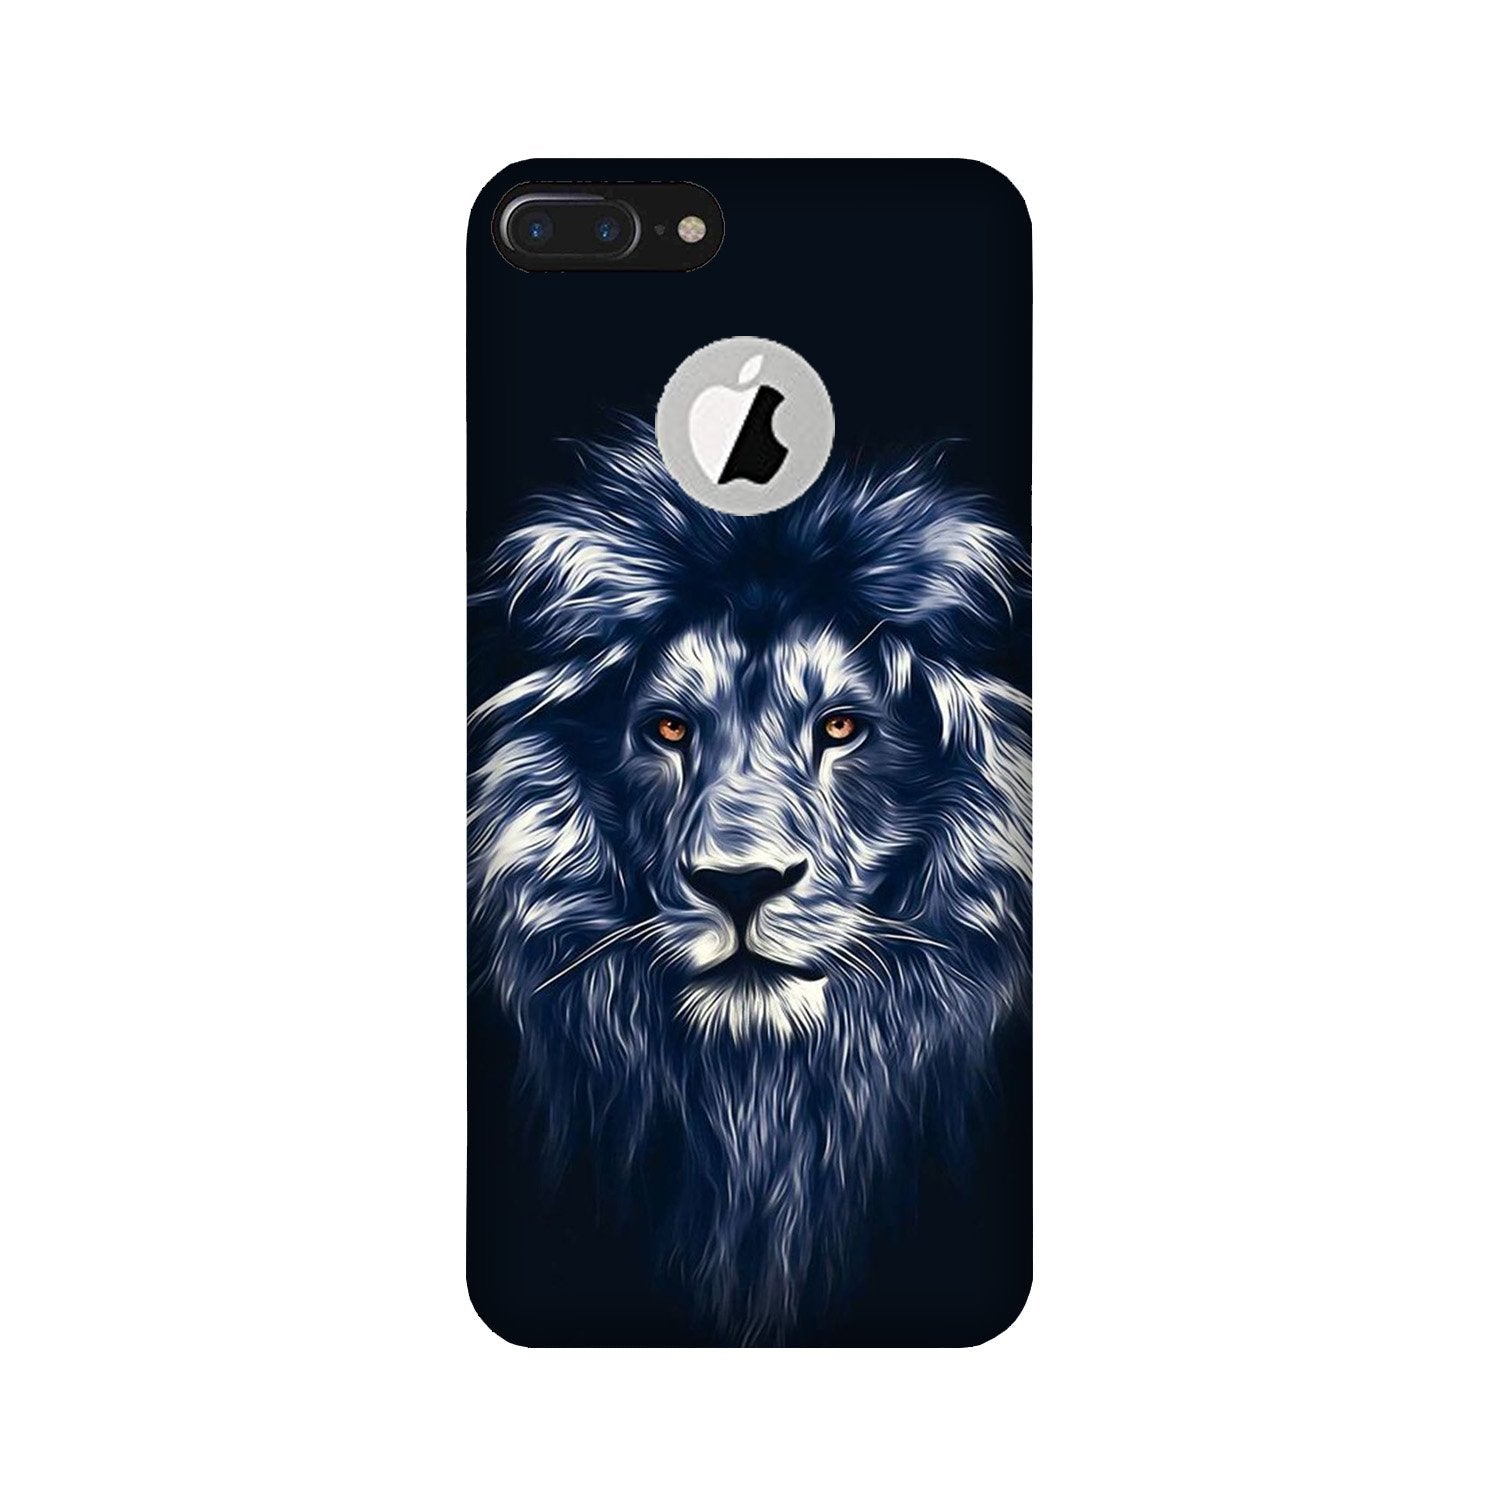 Lion Case for iPhone 7 Plus logo cut (Design No. 281)